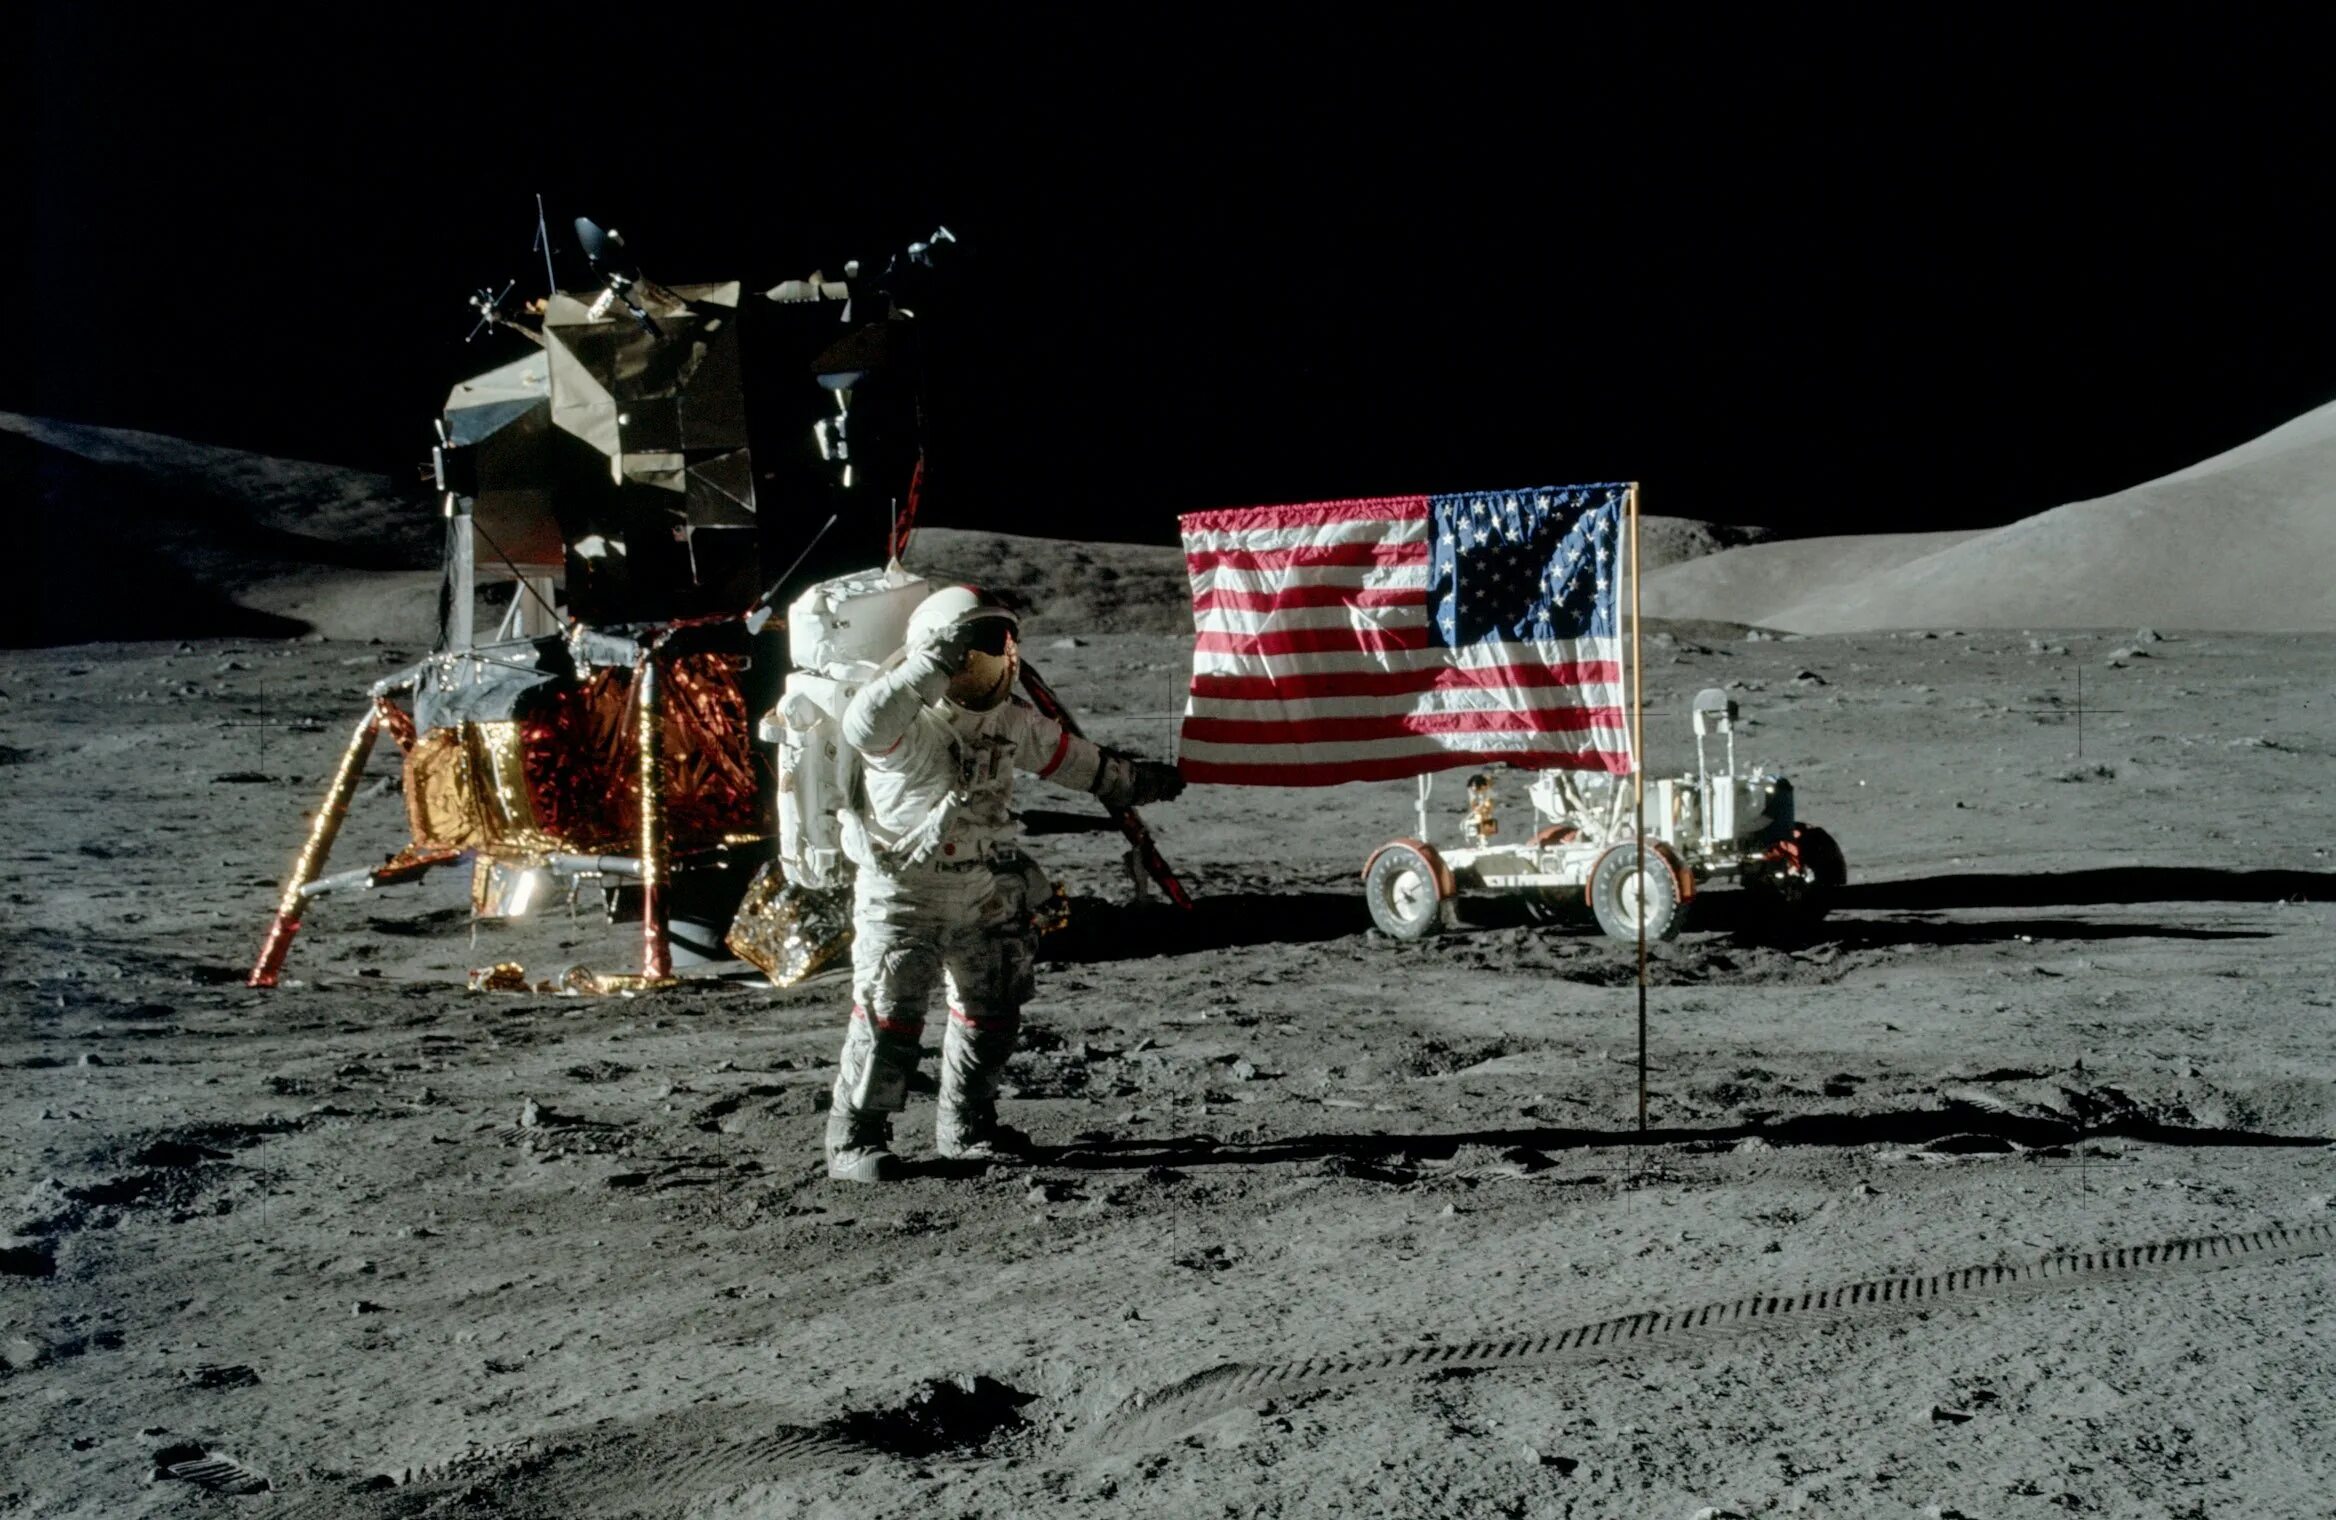 Есть ли на луне. Аполлон 17 на Луне. Аполлон 17 полет на луну. Аполлон 17 последние люди на Луне. Фото астронавтов на Луне Аполлон 17.